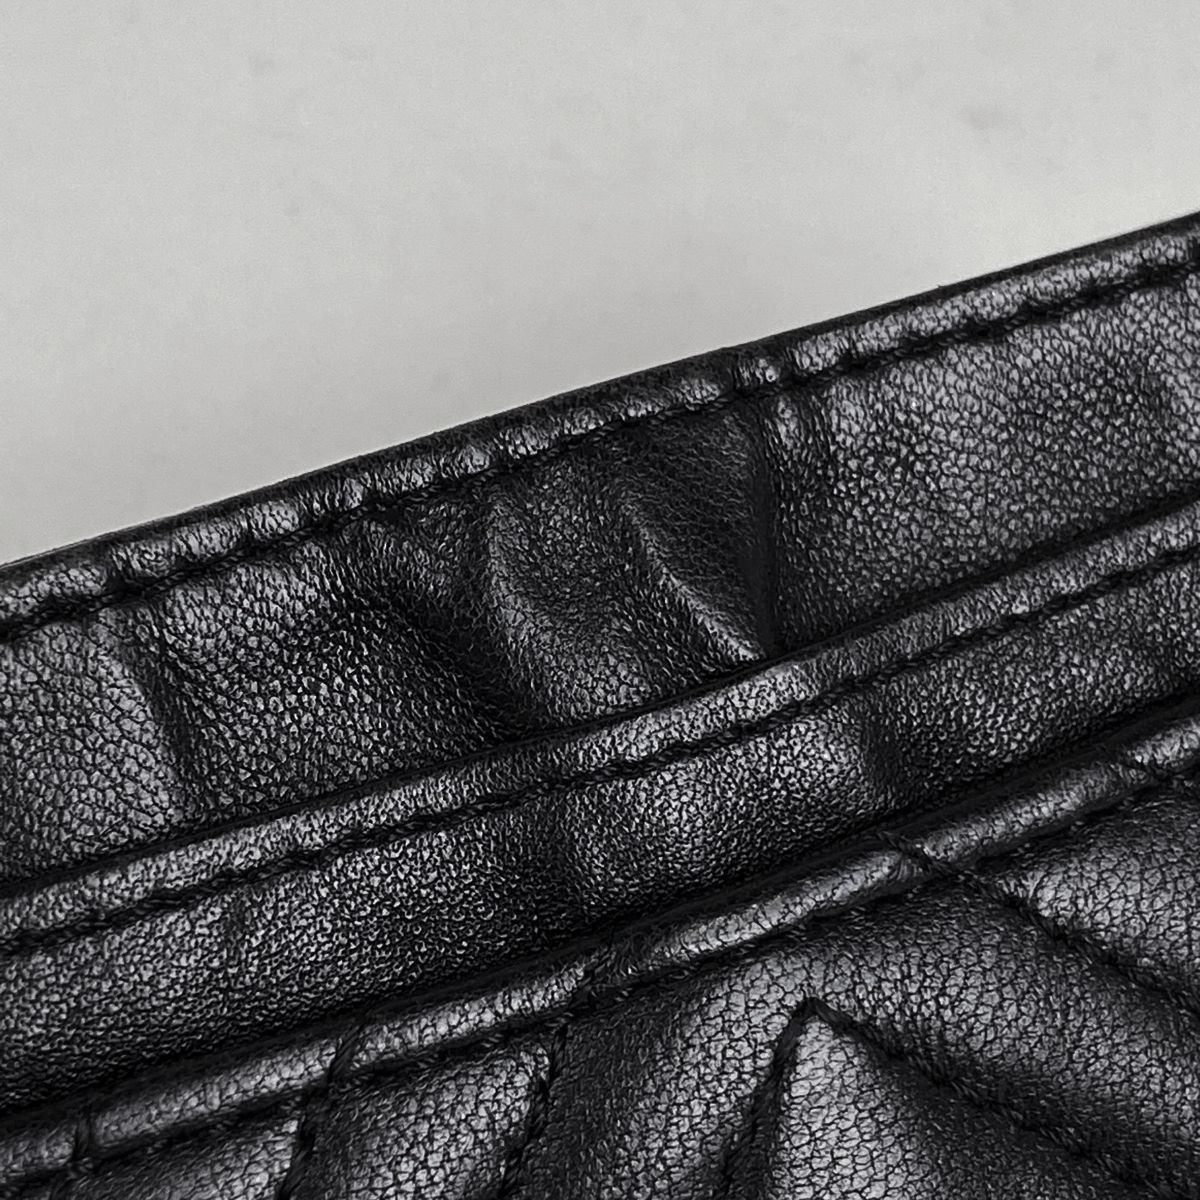 シャネル カードケース クレジット 定期入れ 0番台 ビコローレステッチ ラムスキン 革 ブラック 黒 ココマーク 普段使い 小物 レディース 女性 CHANEL Coin card case leather black coco